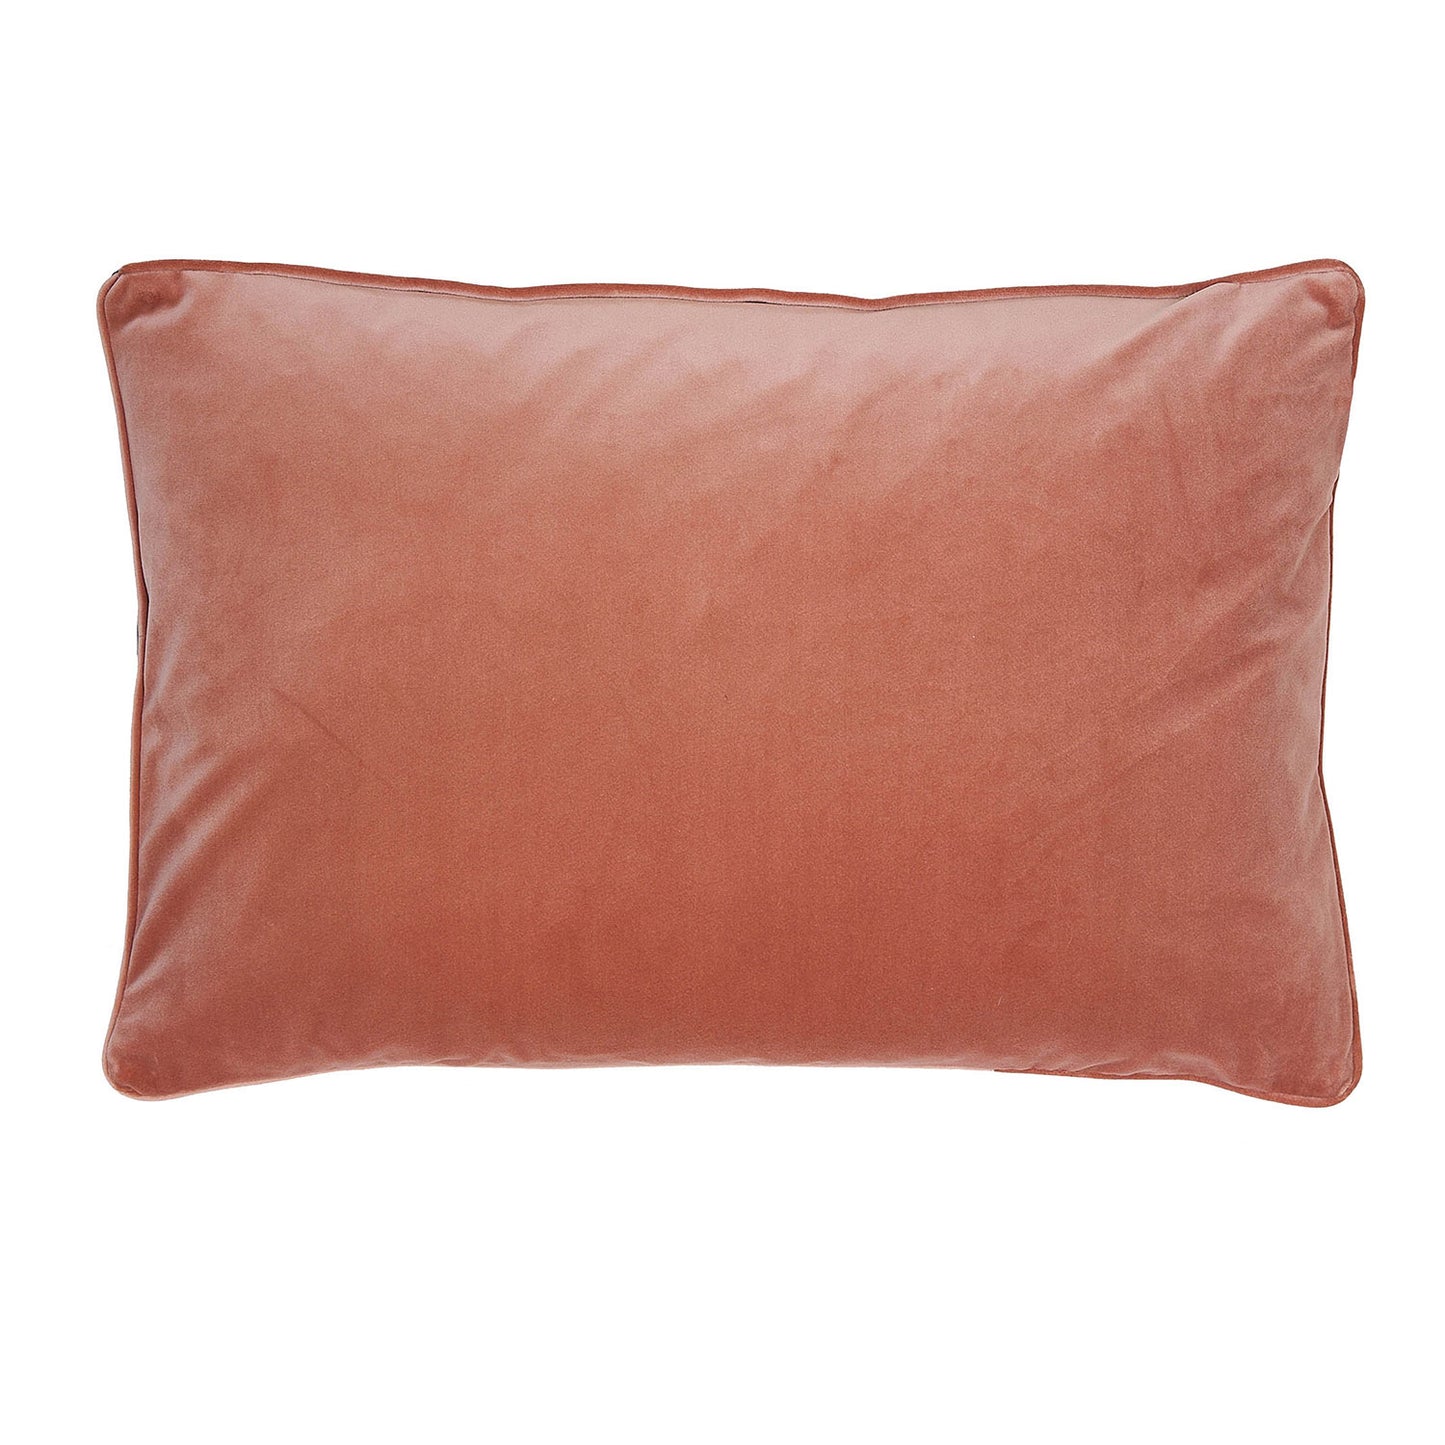 Clarissa Hulse Teasel Shell Velvet Cushion (40cm x 60cm)